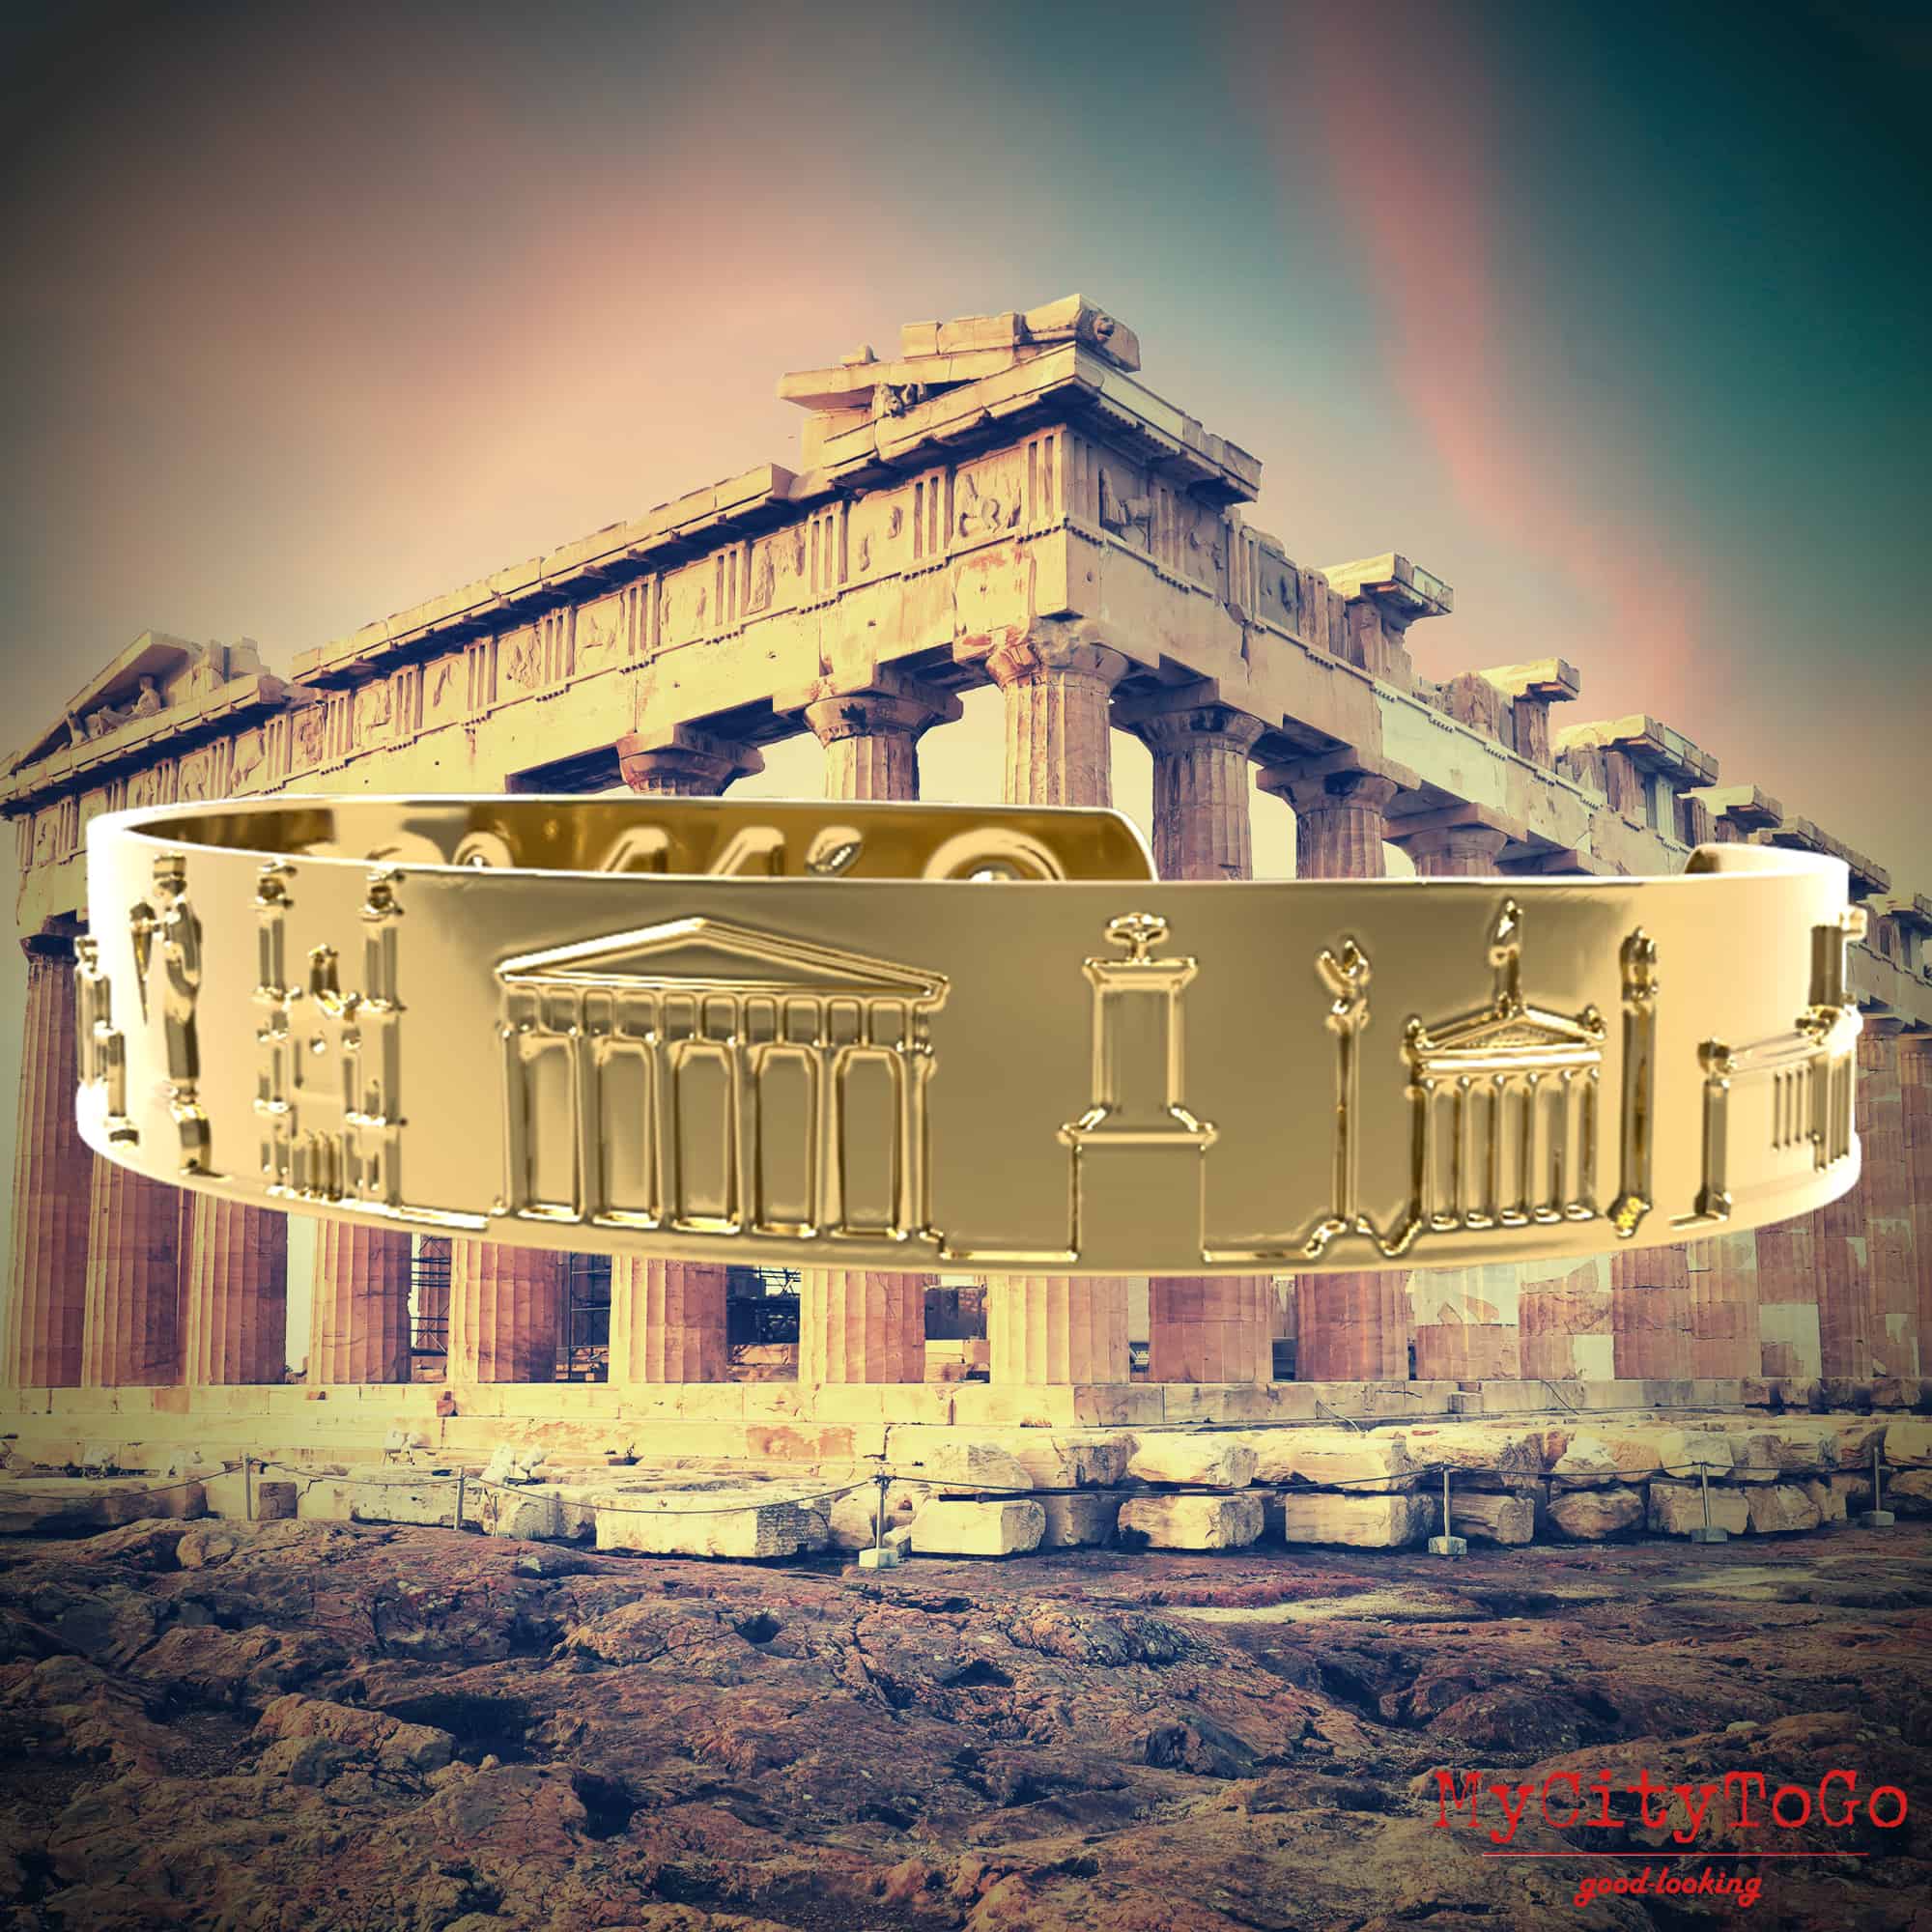 χρυσό βραχιόλι με διάσημα μοτίβα και συντεταγμένες από την Αθήνα